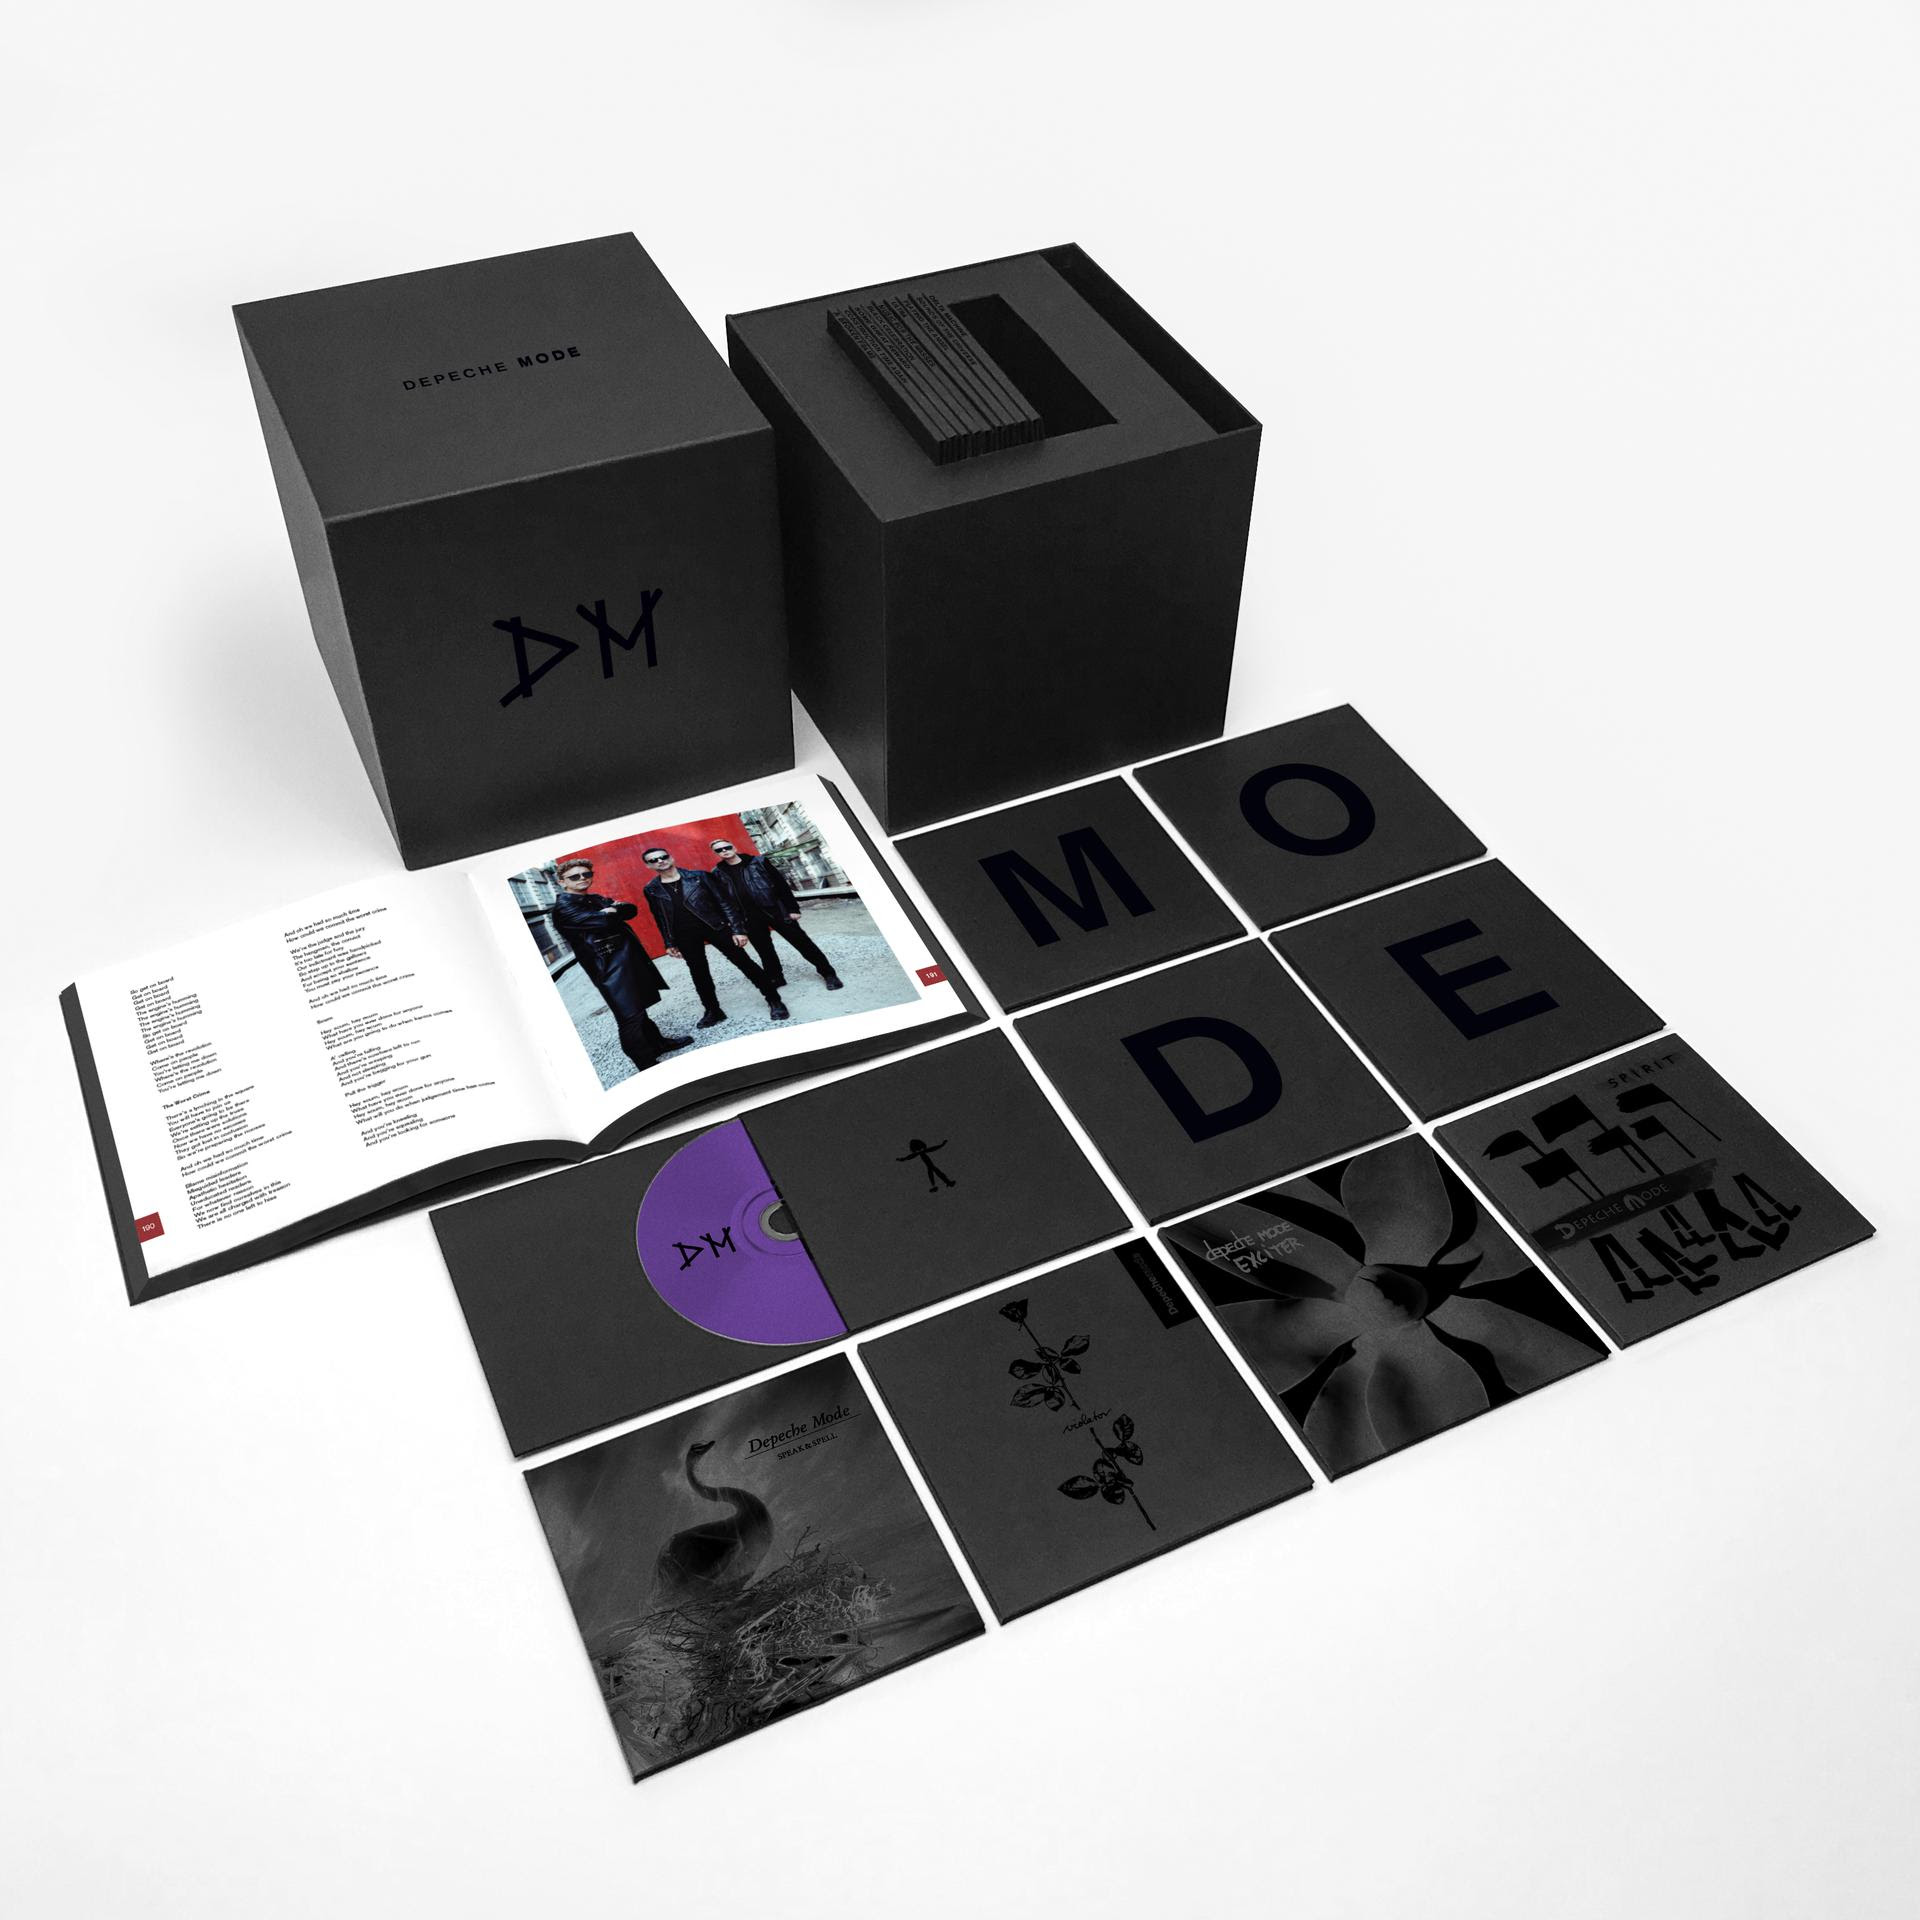 MODE, la caja recopilatoria de Depeche Mode